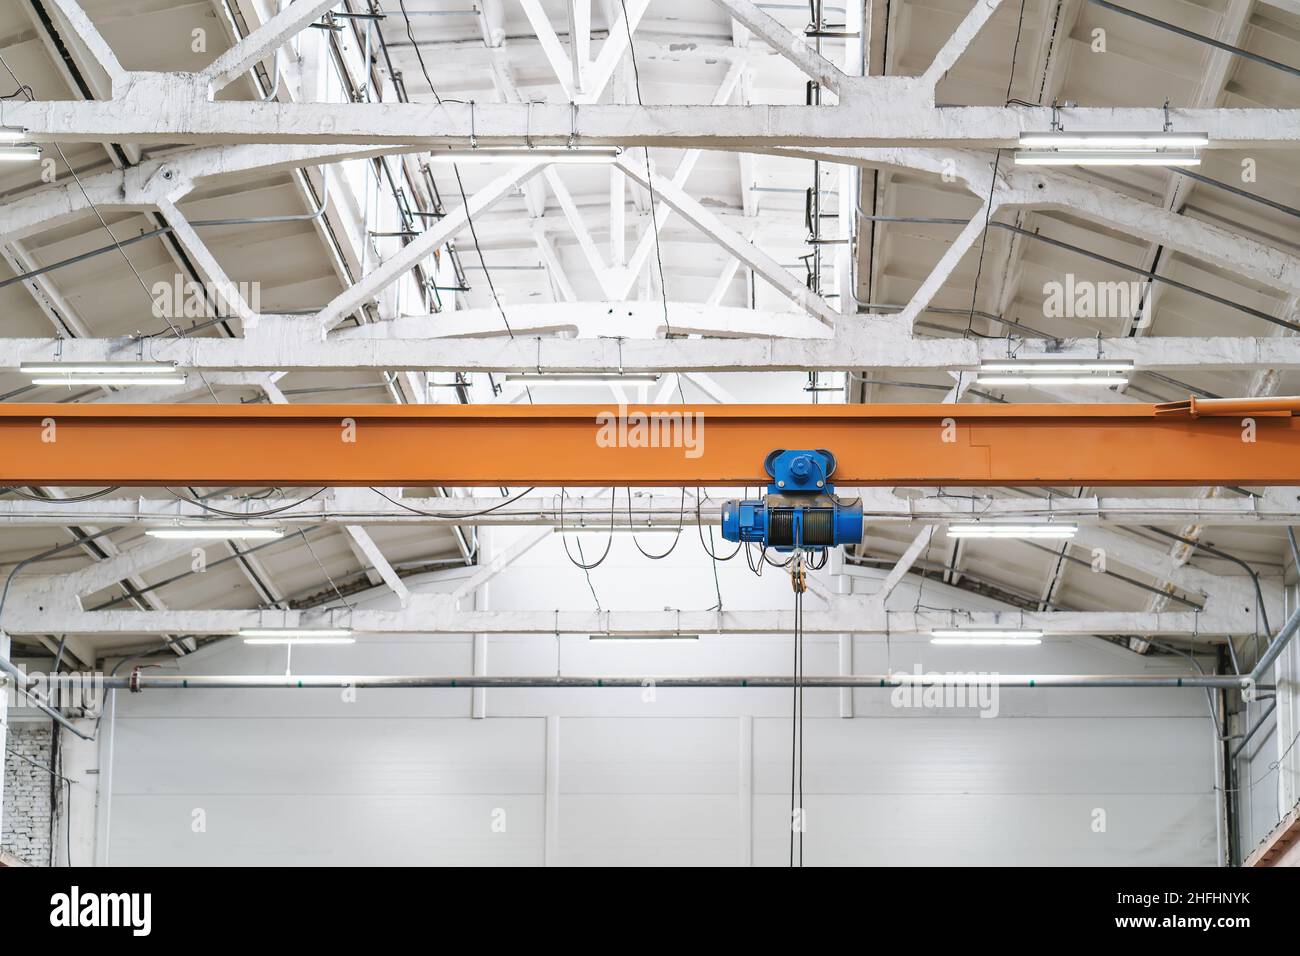 Overhead beam or bridge crane in industrial warehouse hangar building. Stock Photo